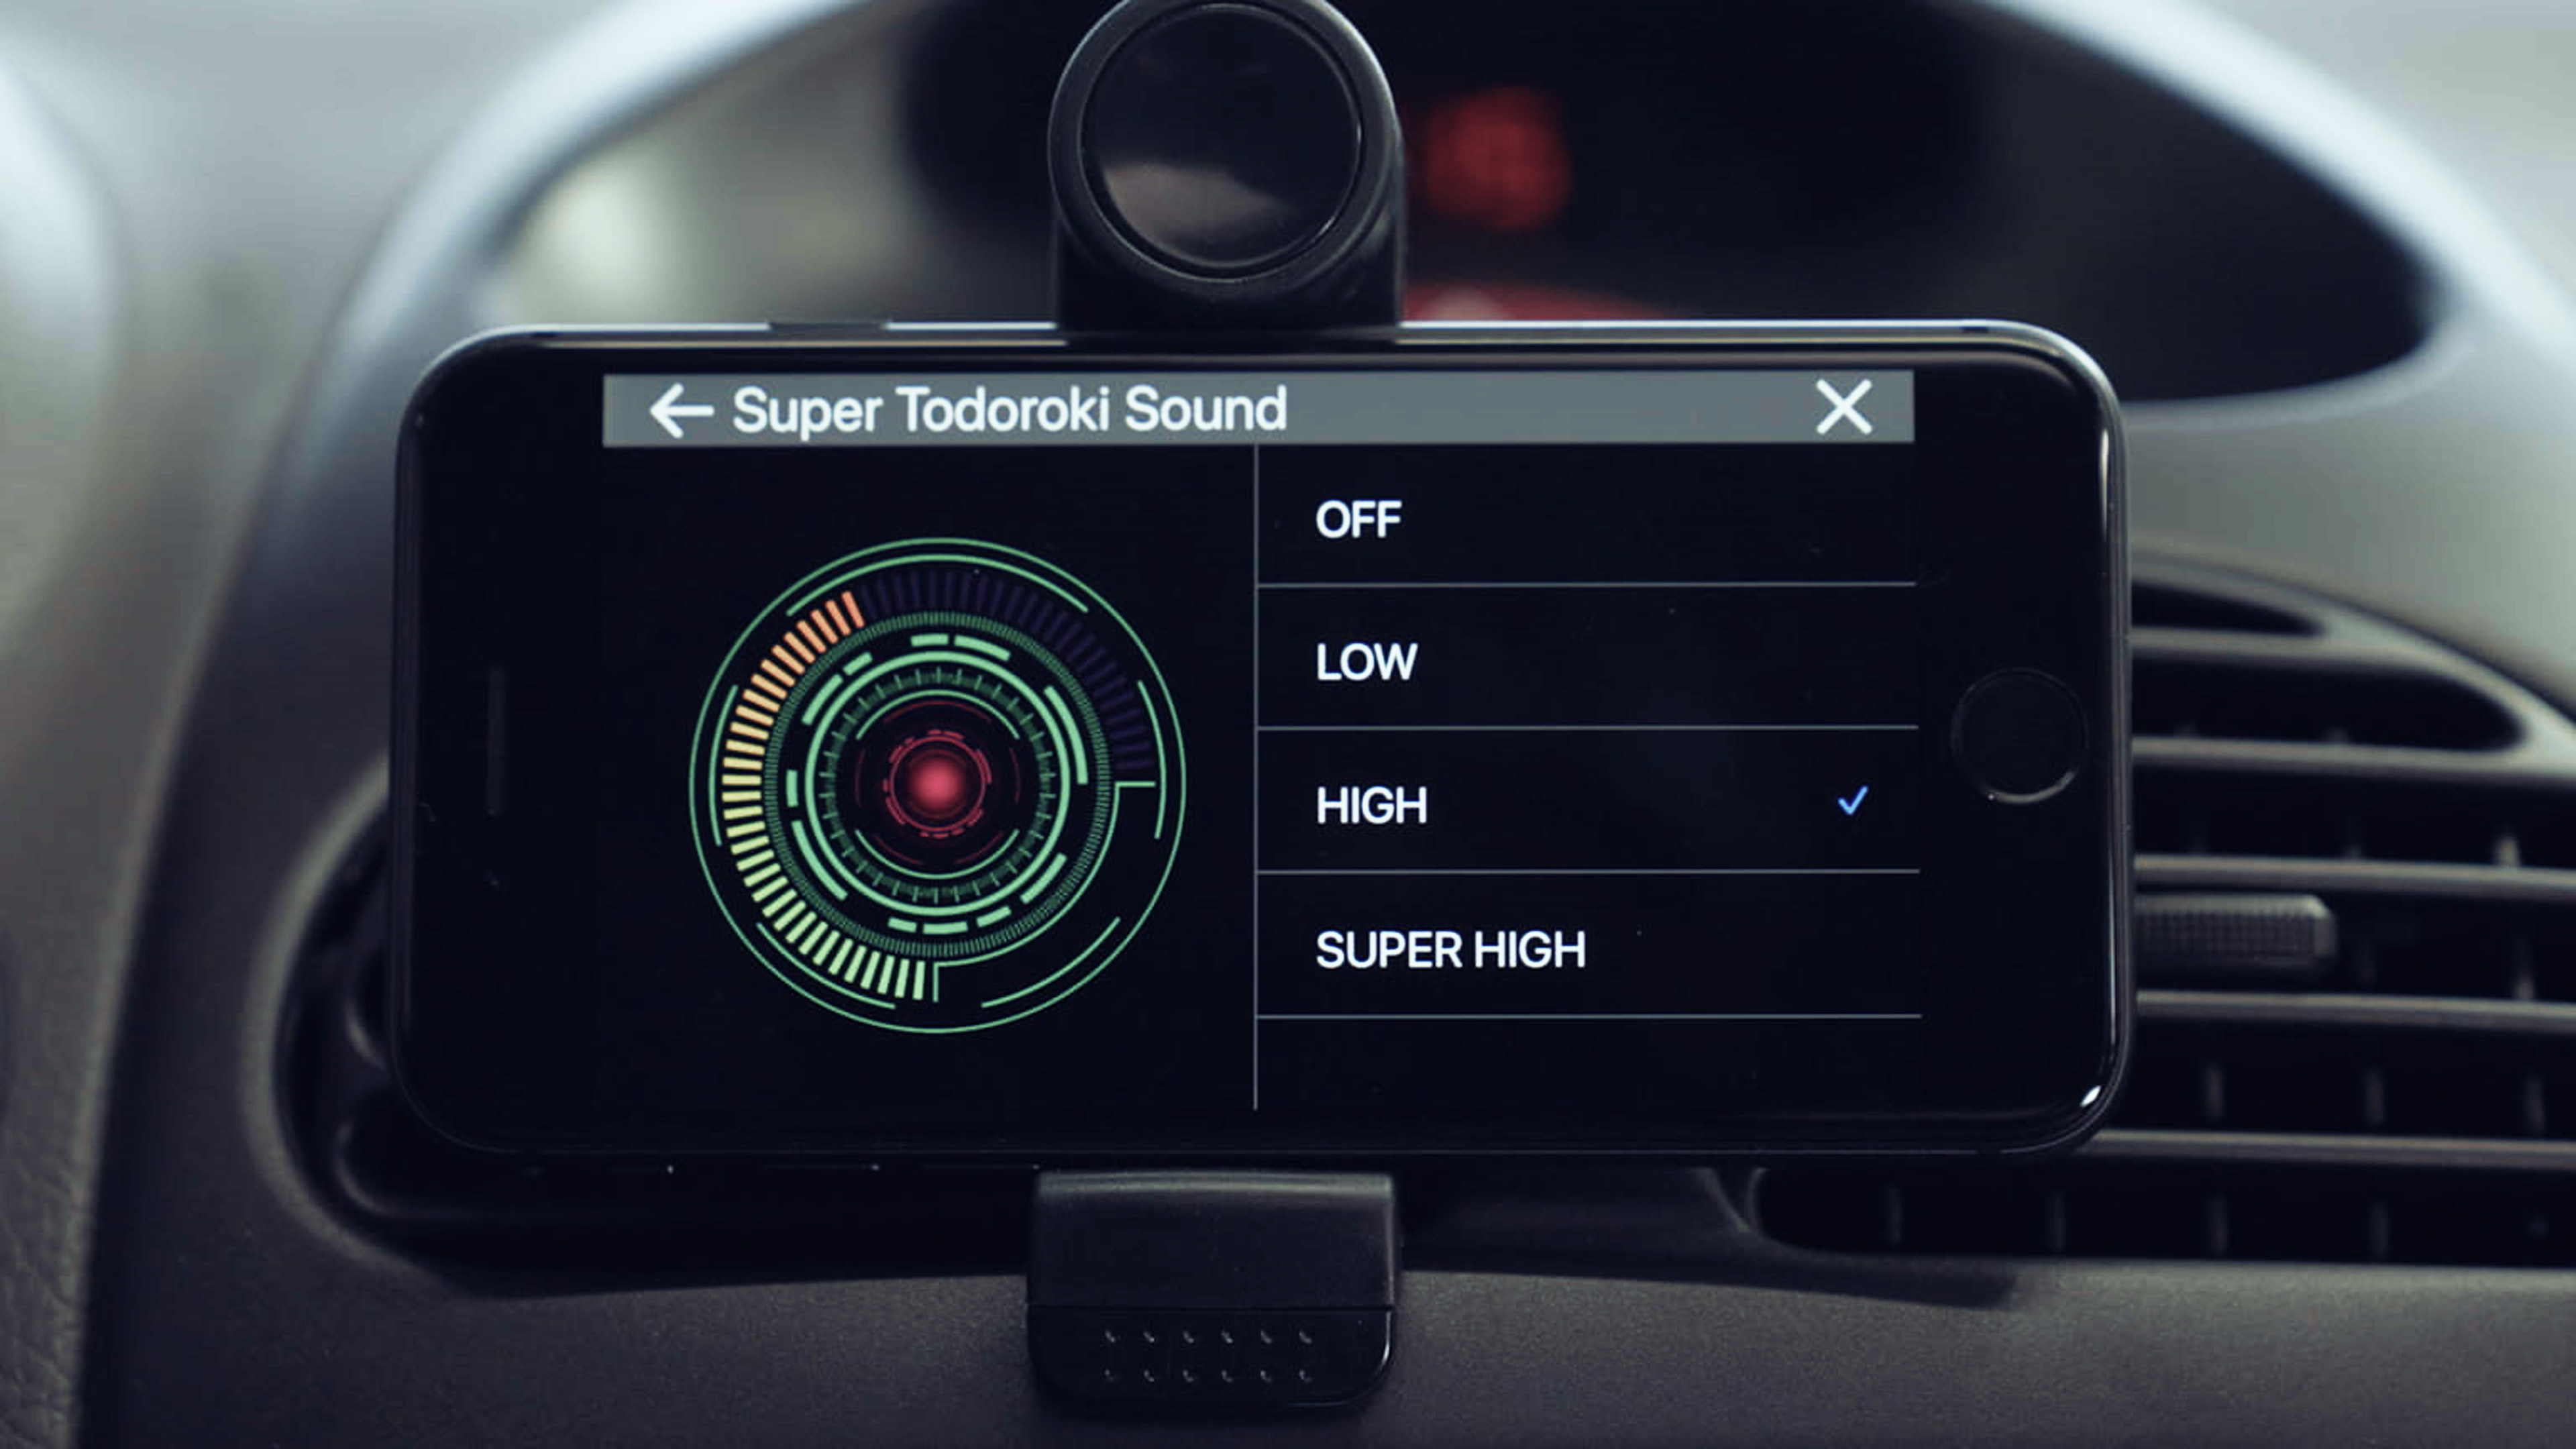 Pioneer transforme votre smartphone en écran central pour voiture